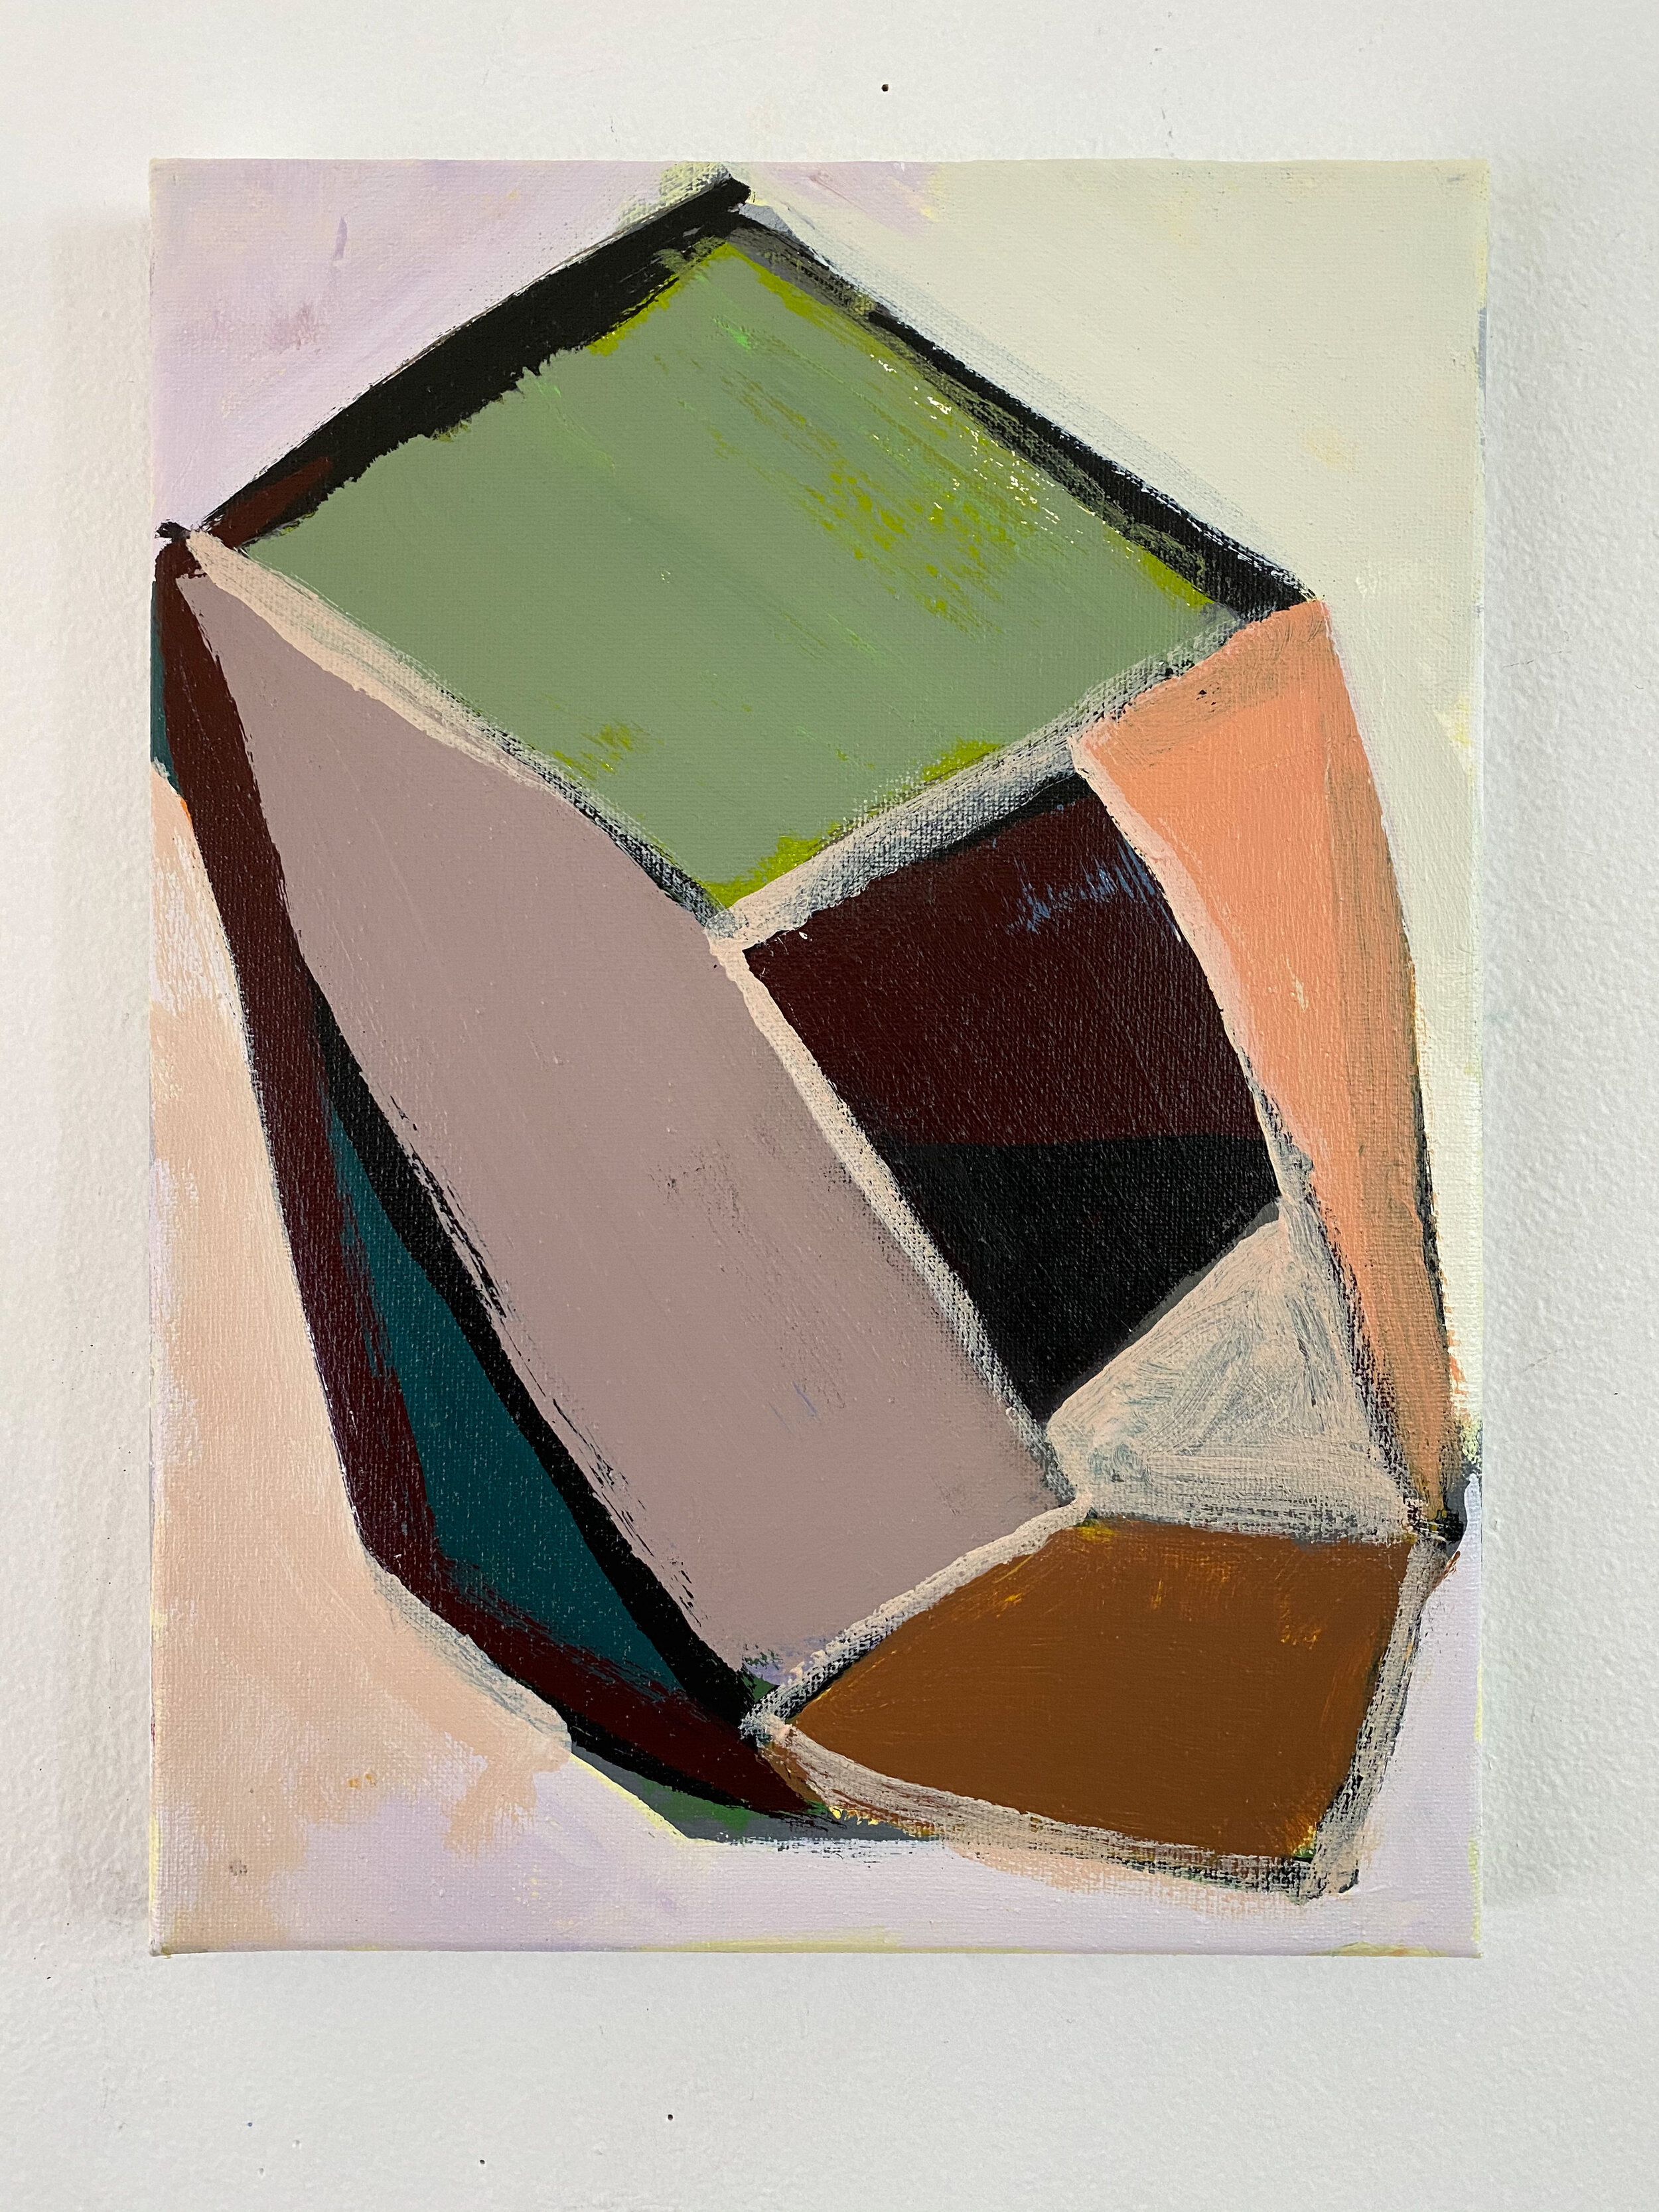 "Tiny Imperfect House", acrylic on canvas, 12" x 9" (30.48cm x 22.86cm)